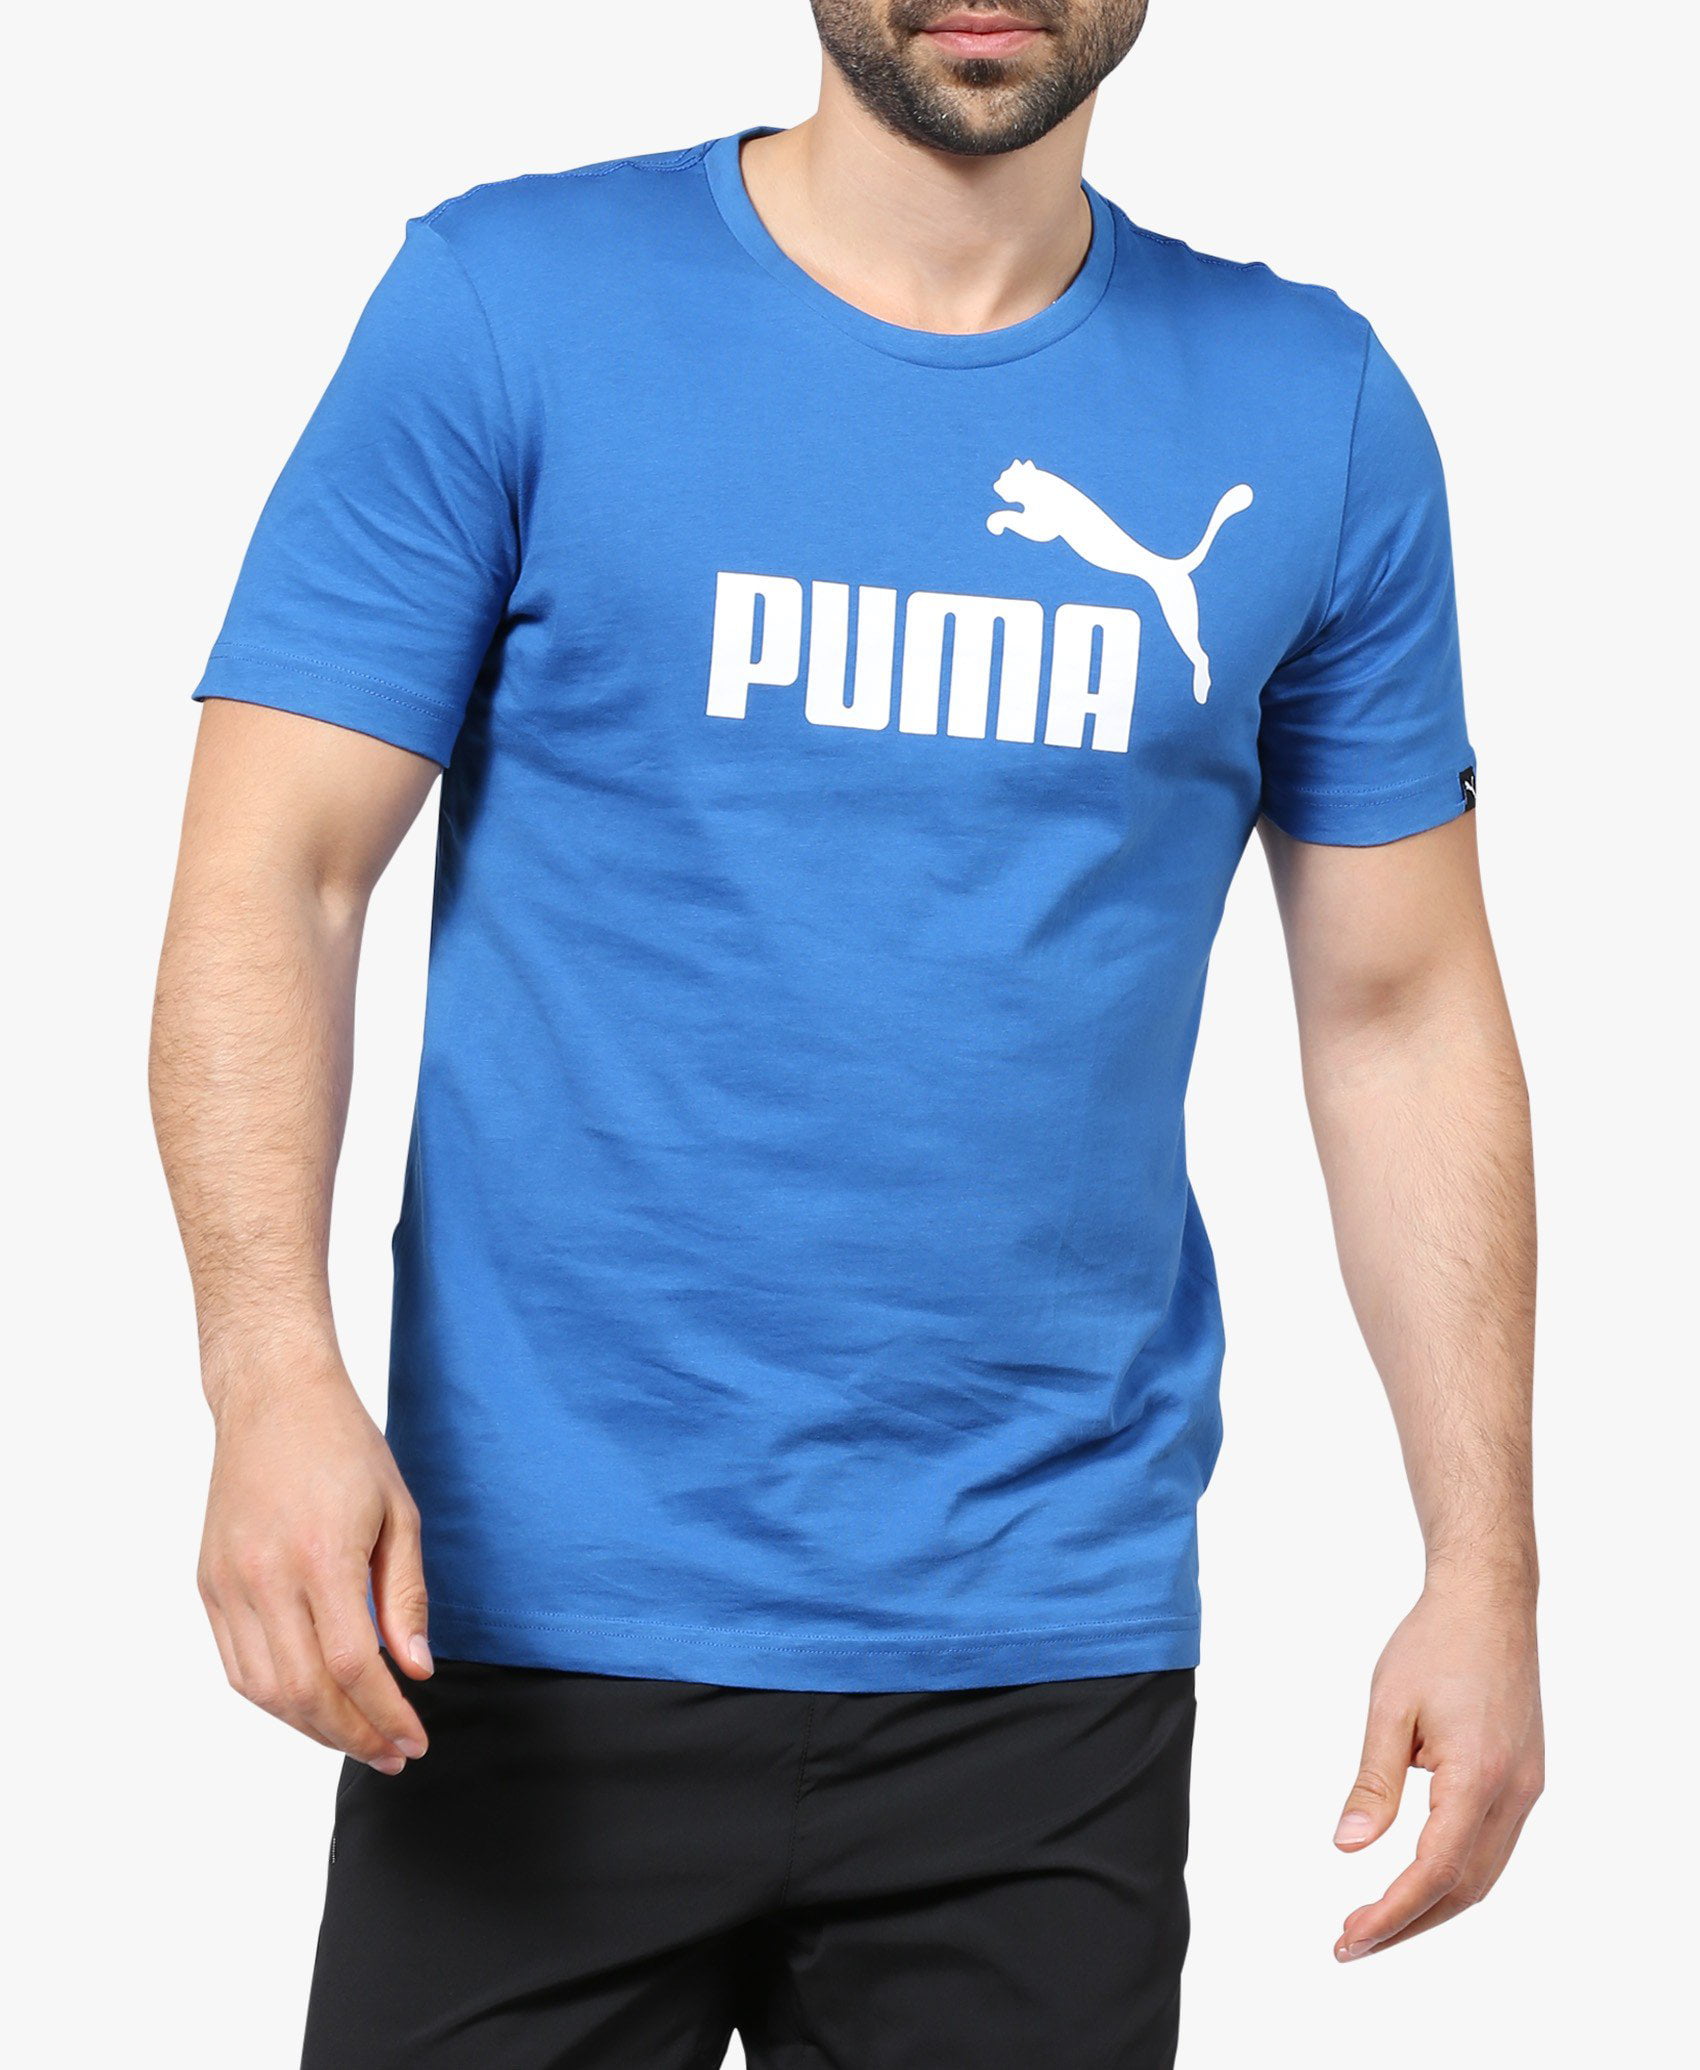 PUMA - PUMA Men's Essential No. 1 T-Shirt (Blue, X-Large) - Walmart.com ...